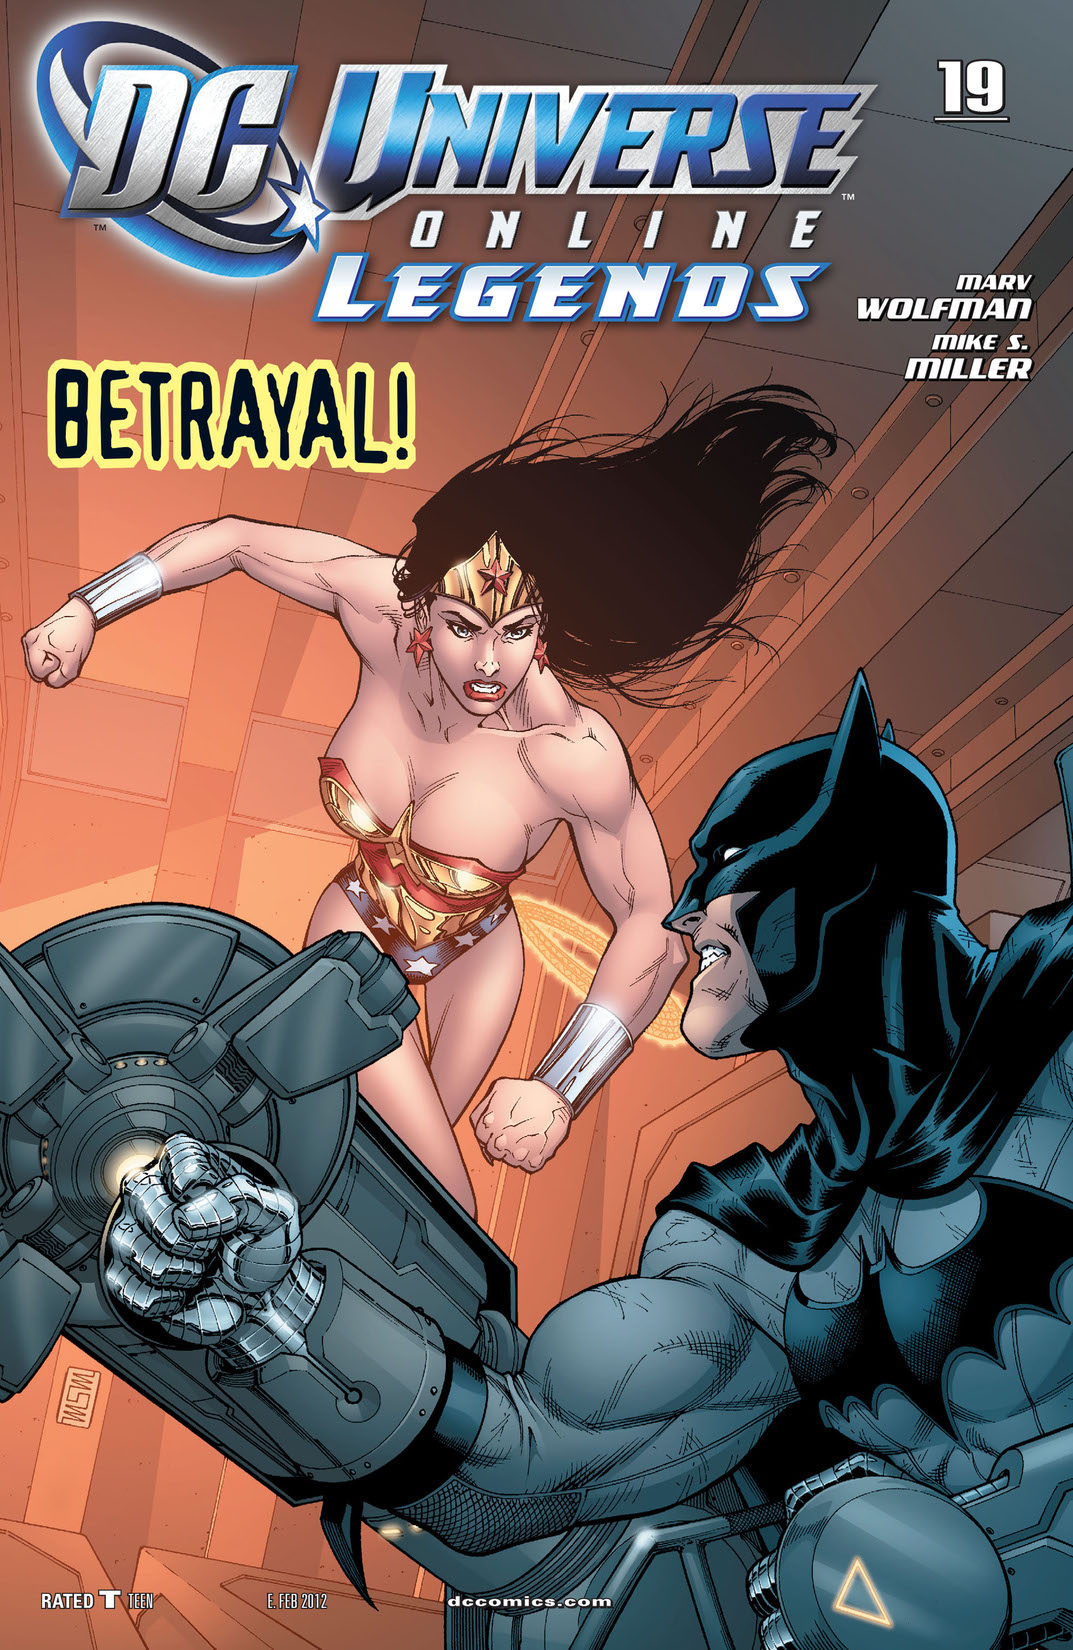 DC Universe Online Legends #19 preview images